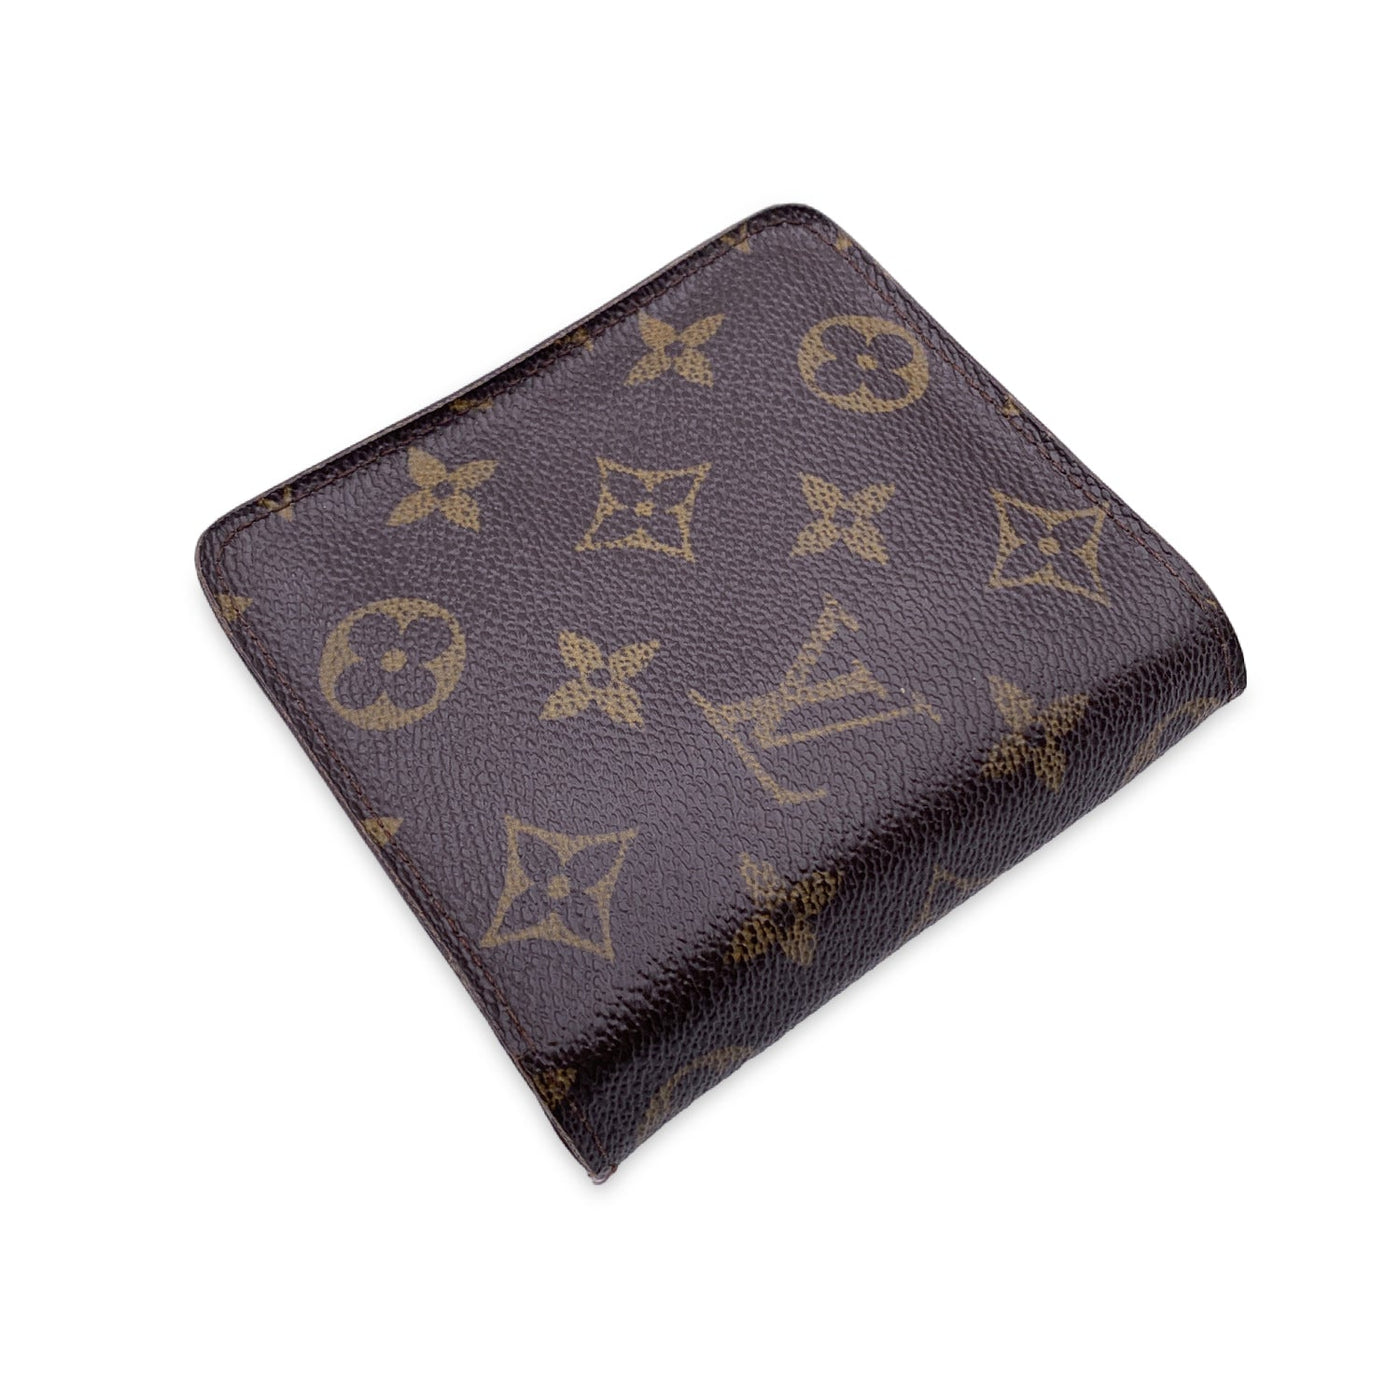 Vintage Louis Vuitton Monogram Compact Zippy Wallet